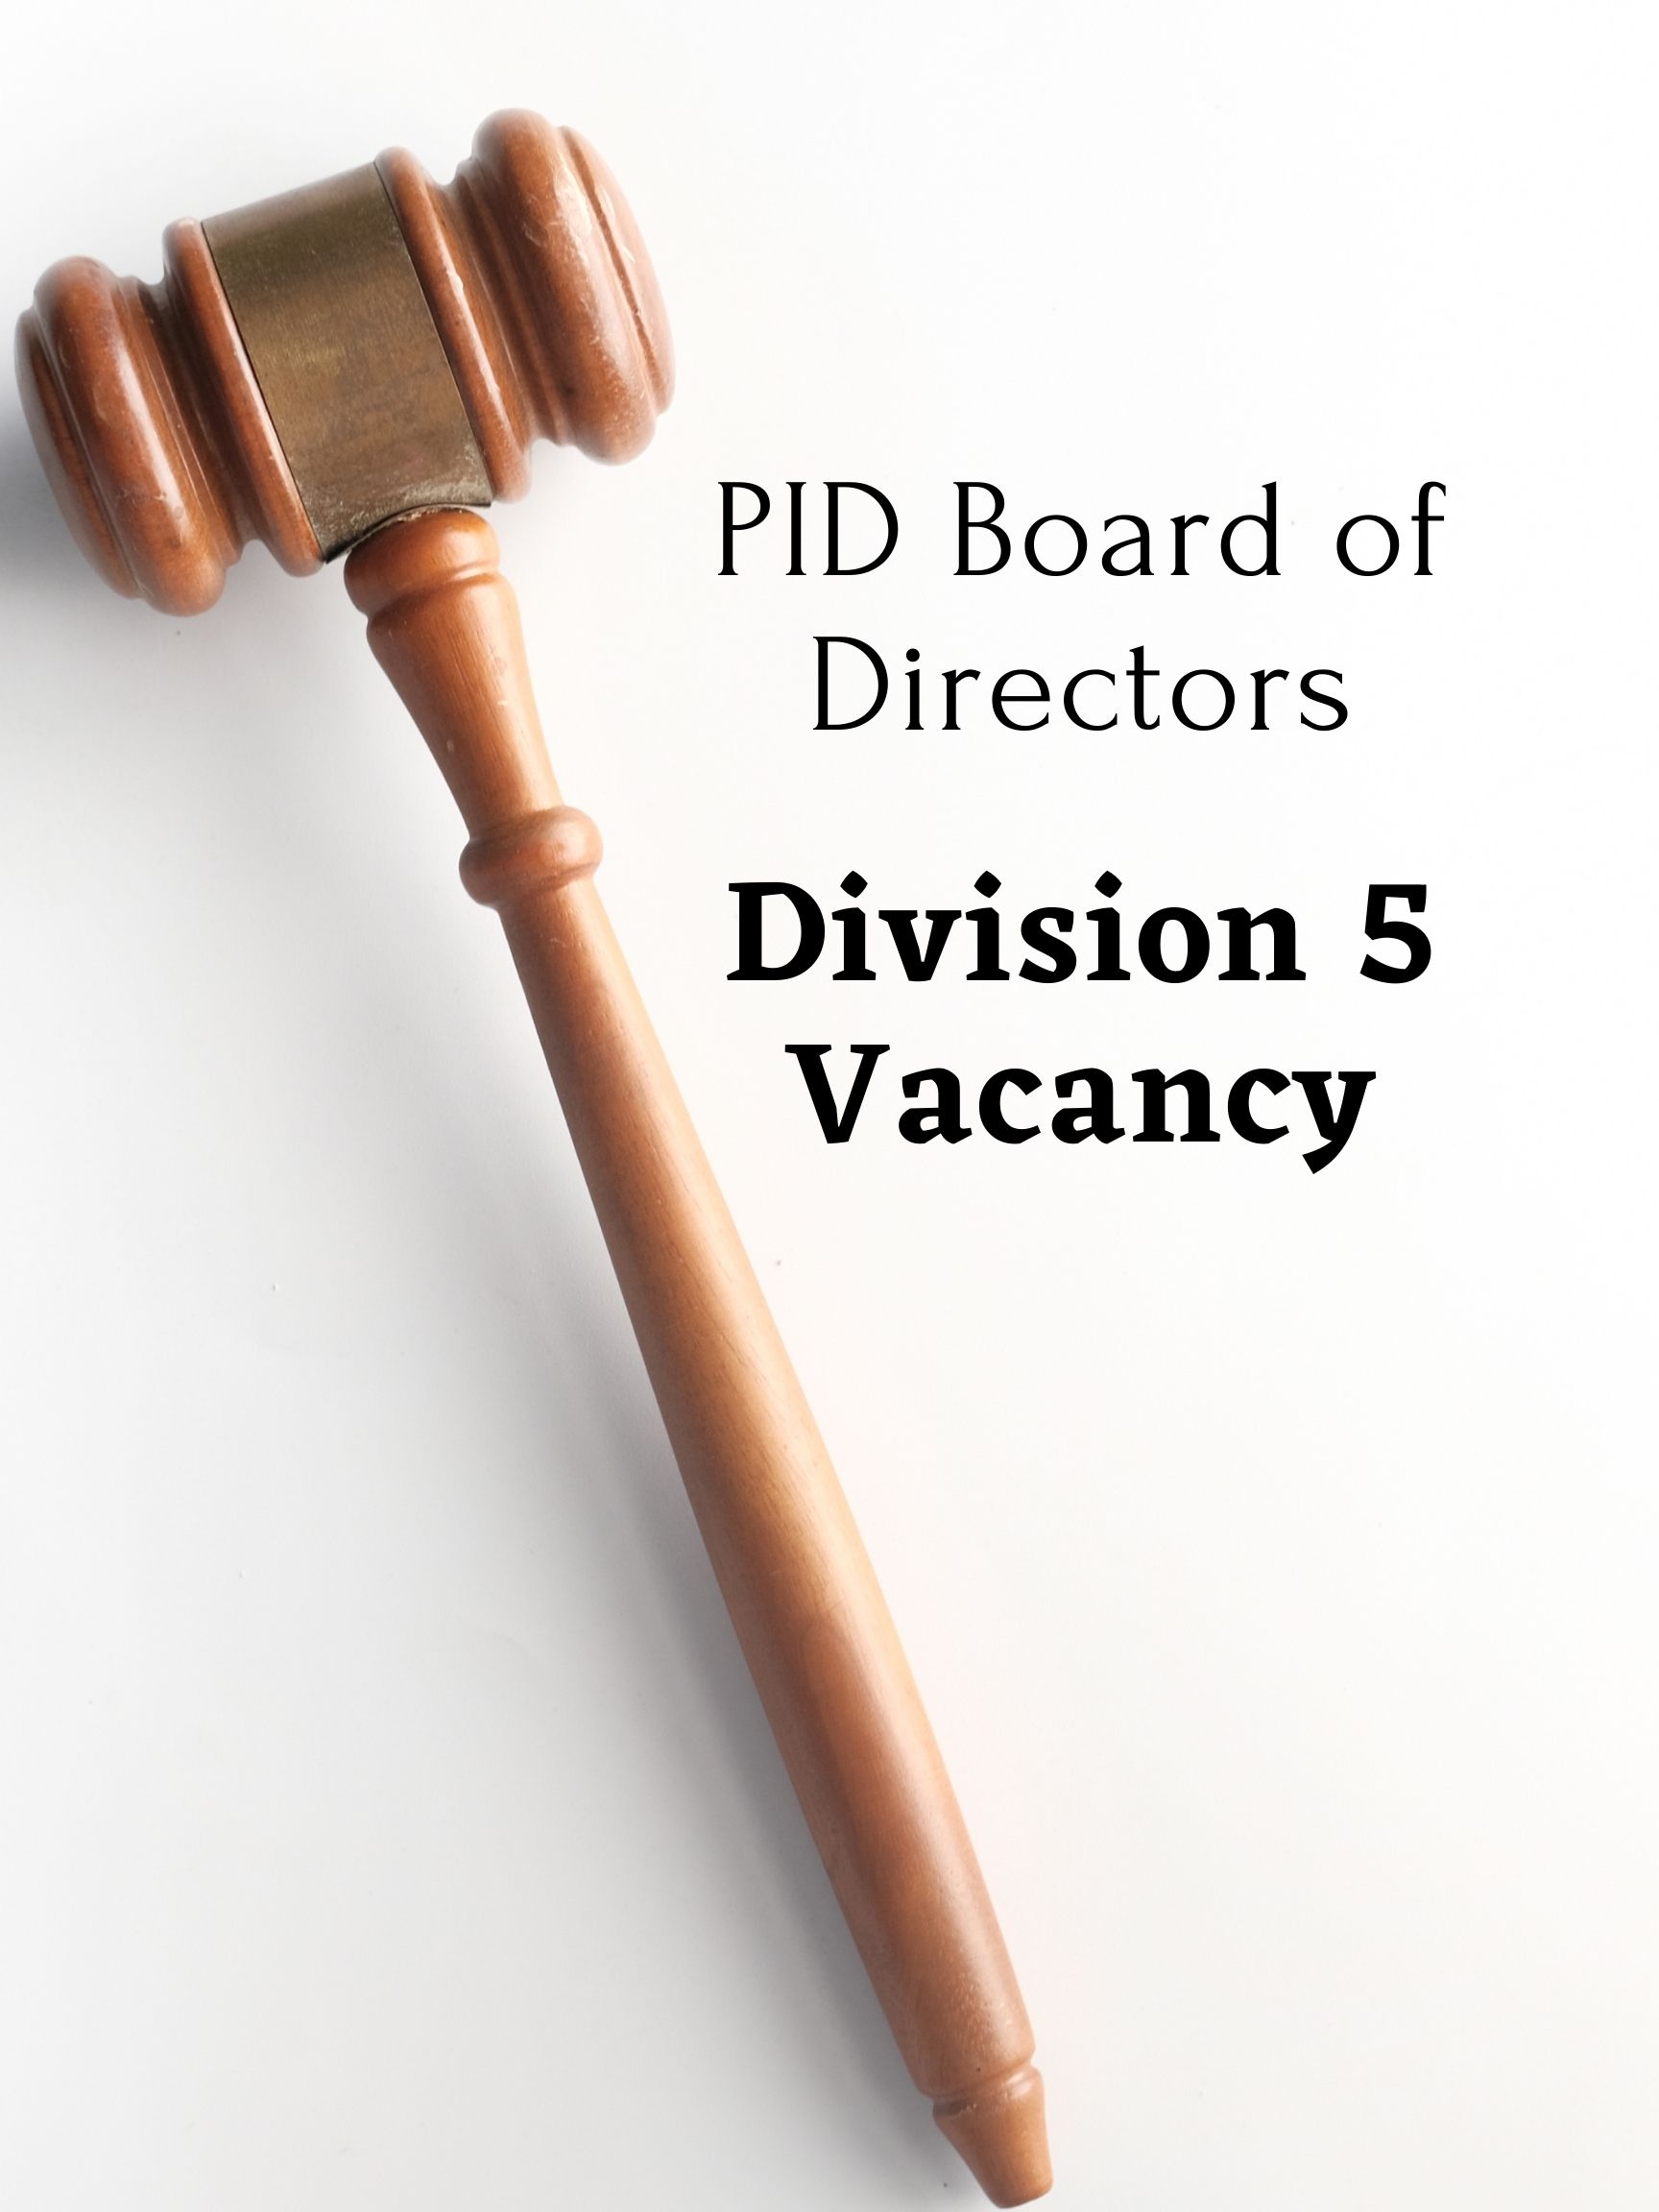 Board of Directors Division 5 Vacancy